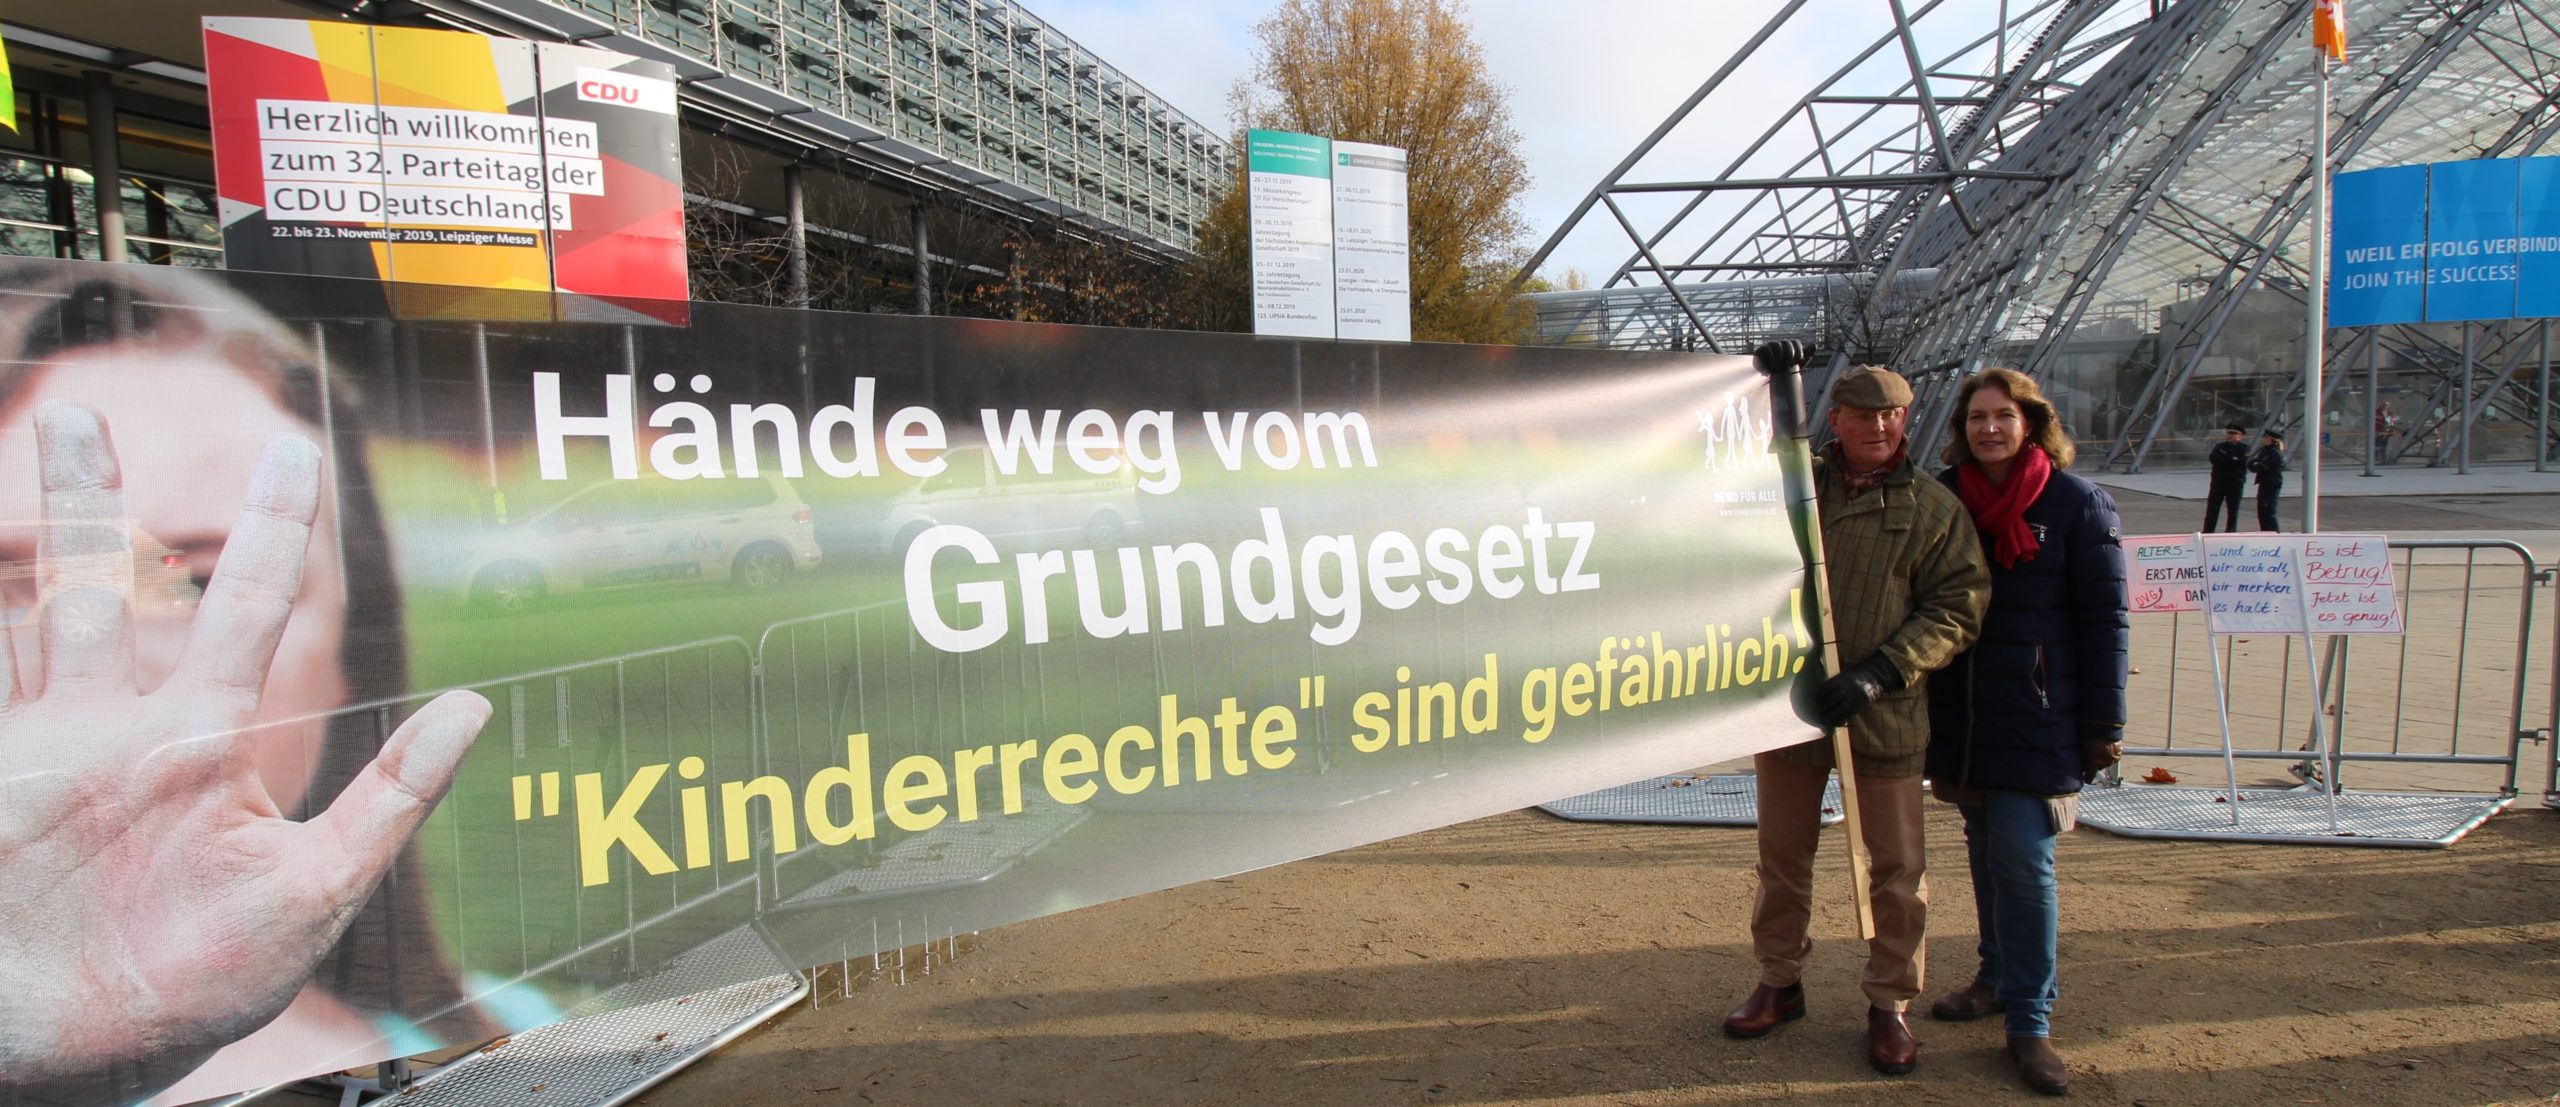 DemoFürAlle-Protest auf CDU-Parteitag: Hände weg vom Grundgesetz!